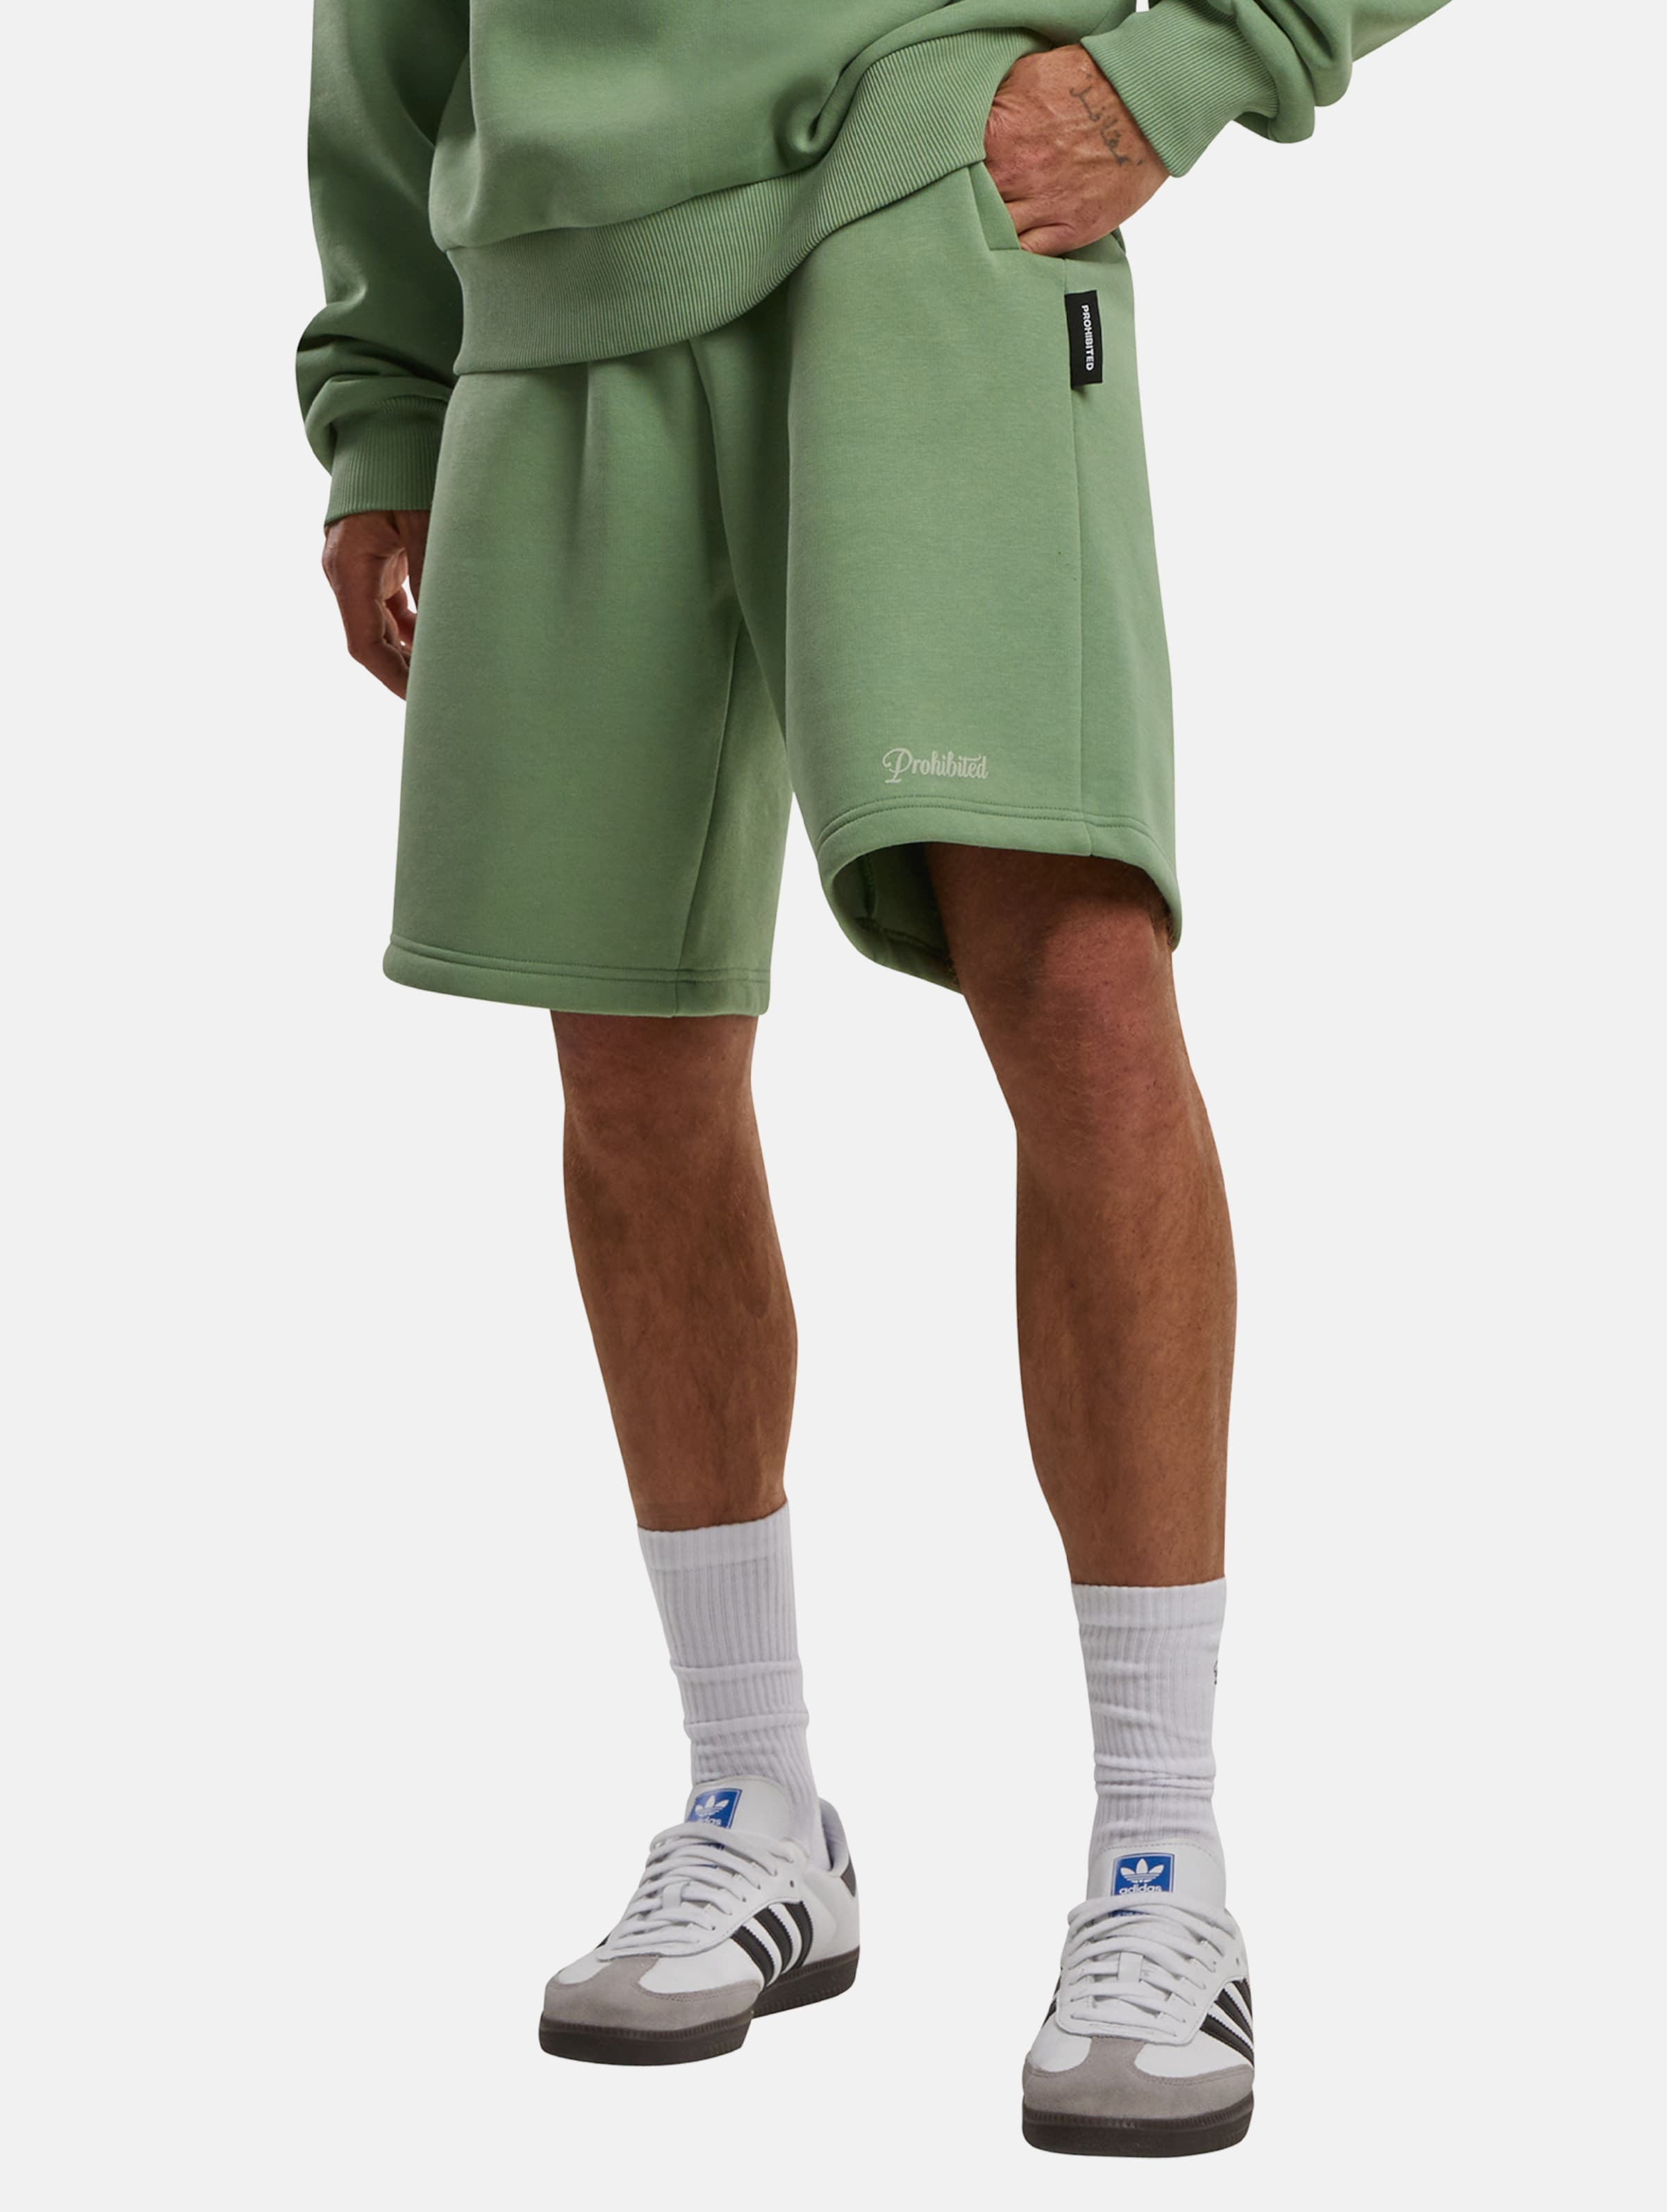 Prohibited 10119 V2 Shorts Männer,Unisex op kleur groen, Maat XS